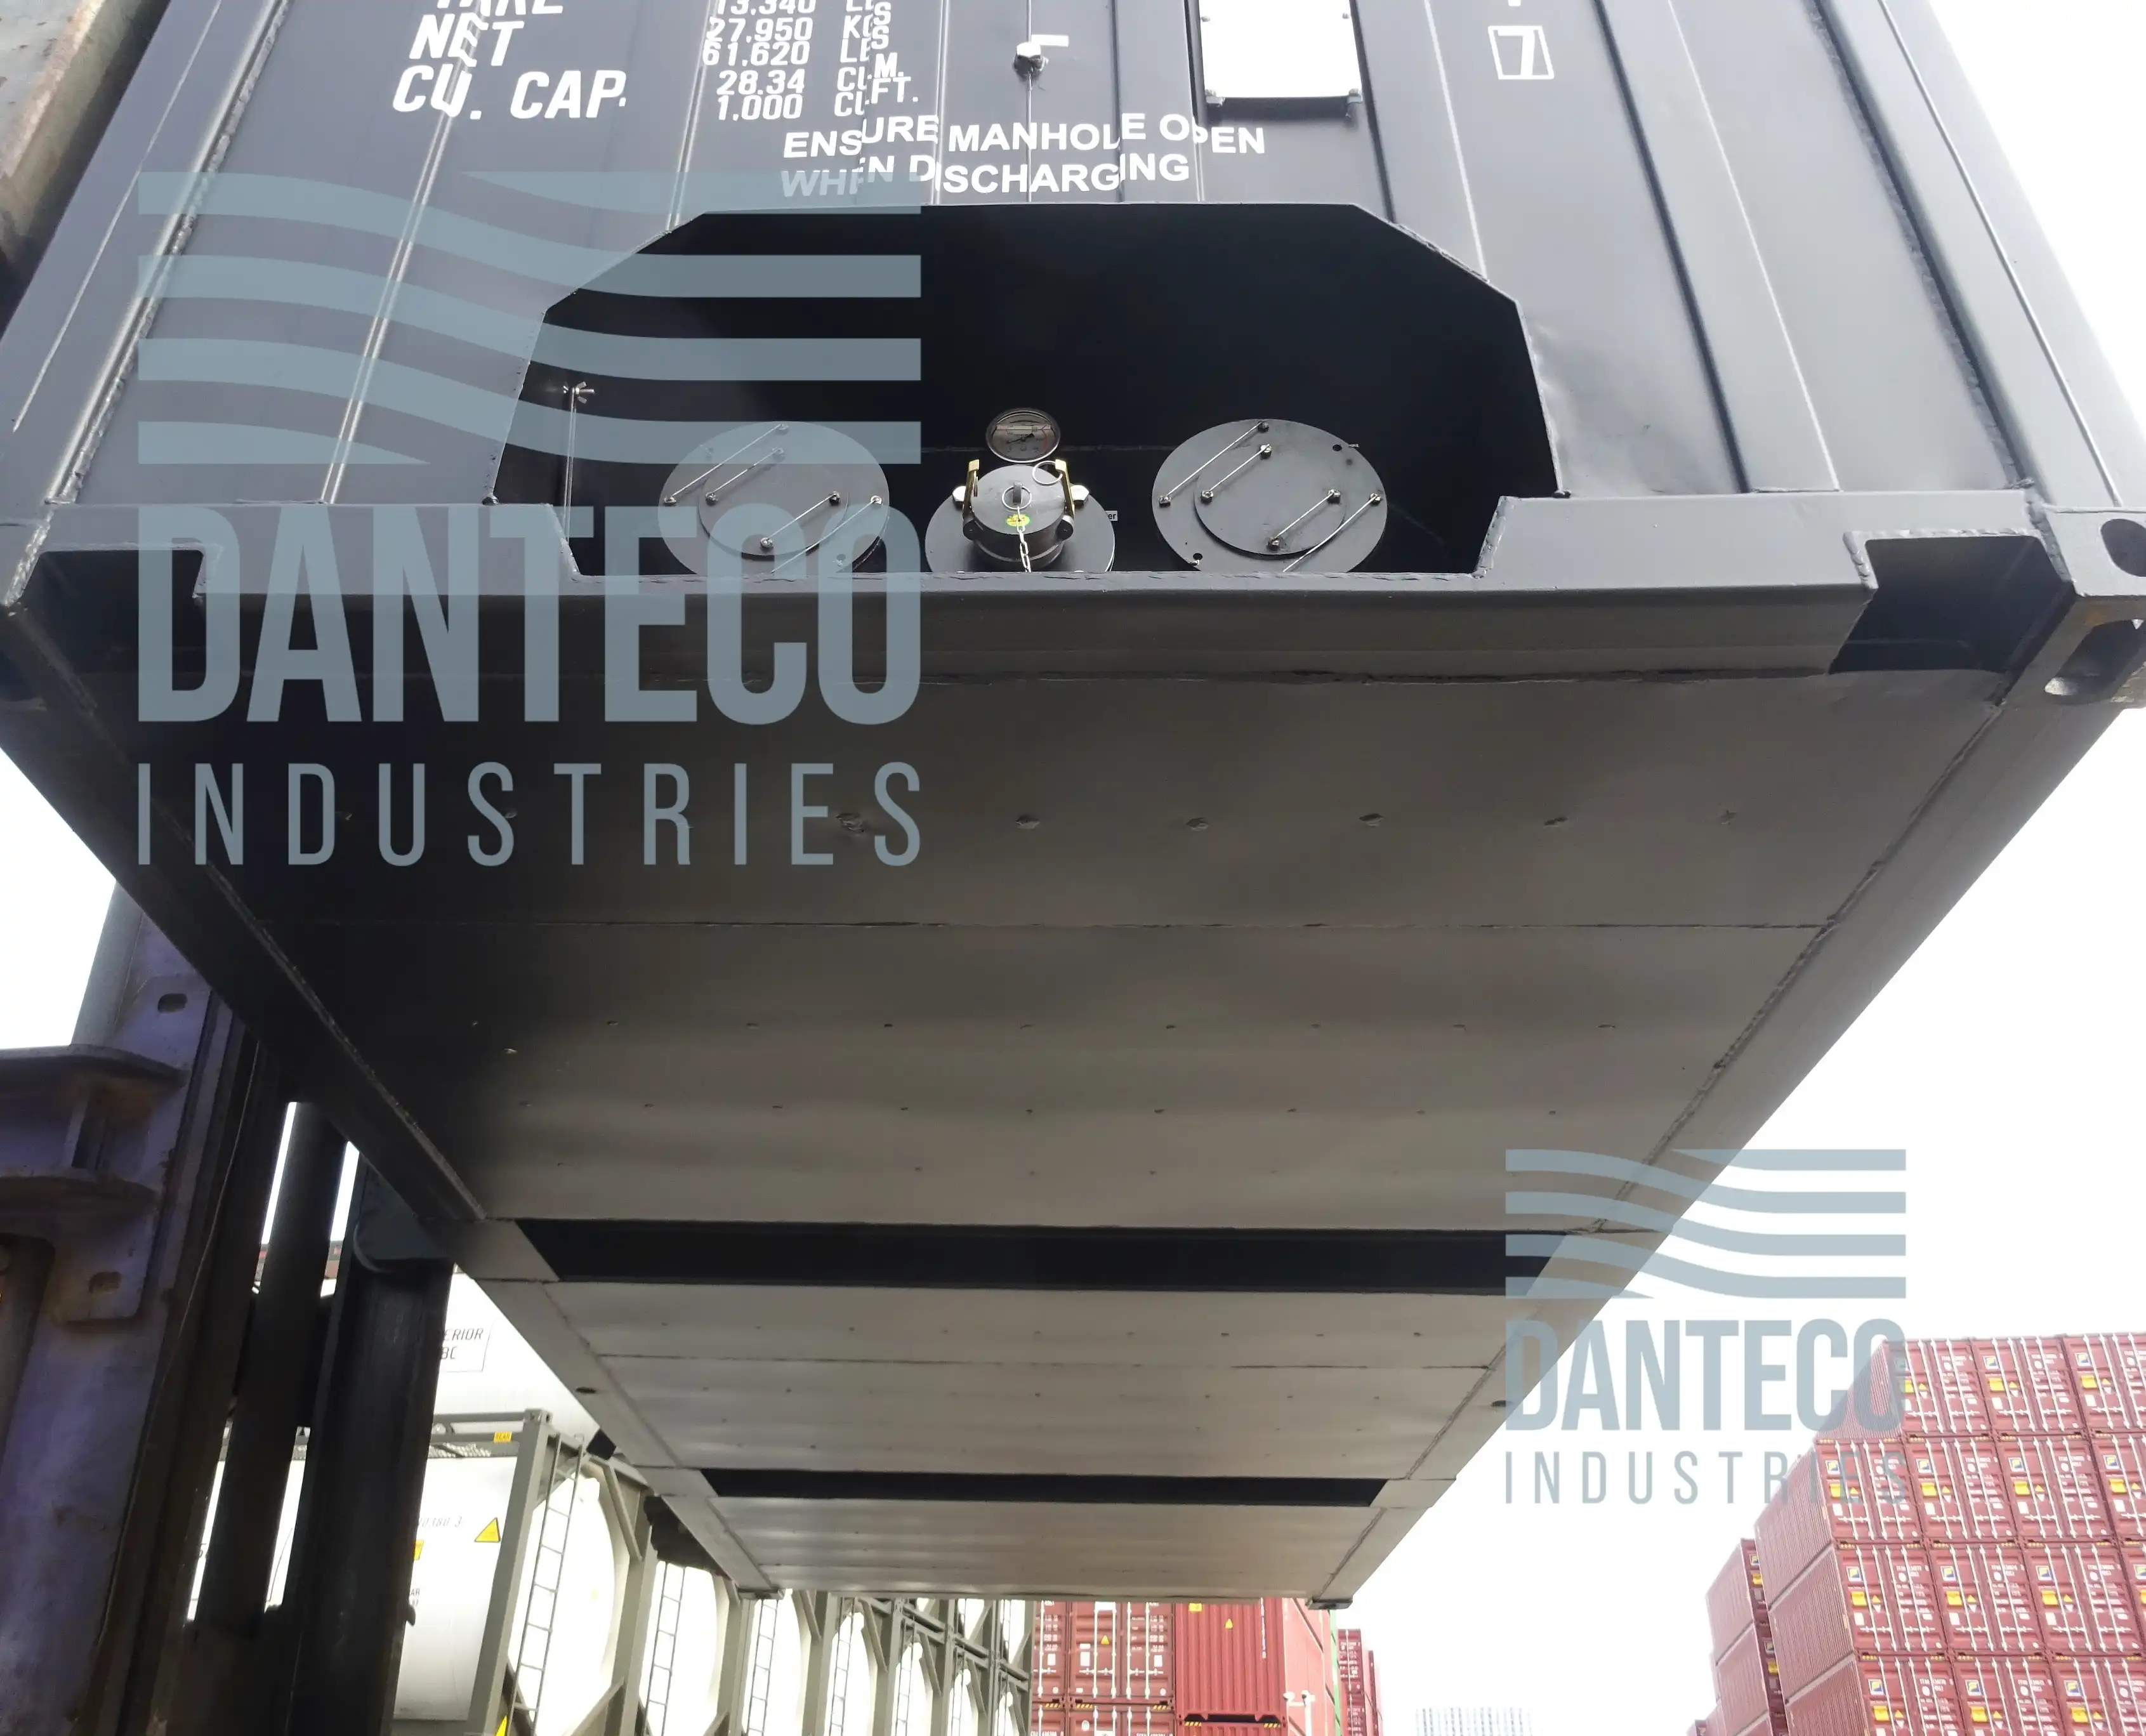 Bitucontainer - Bitumen Box Container